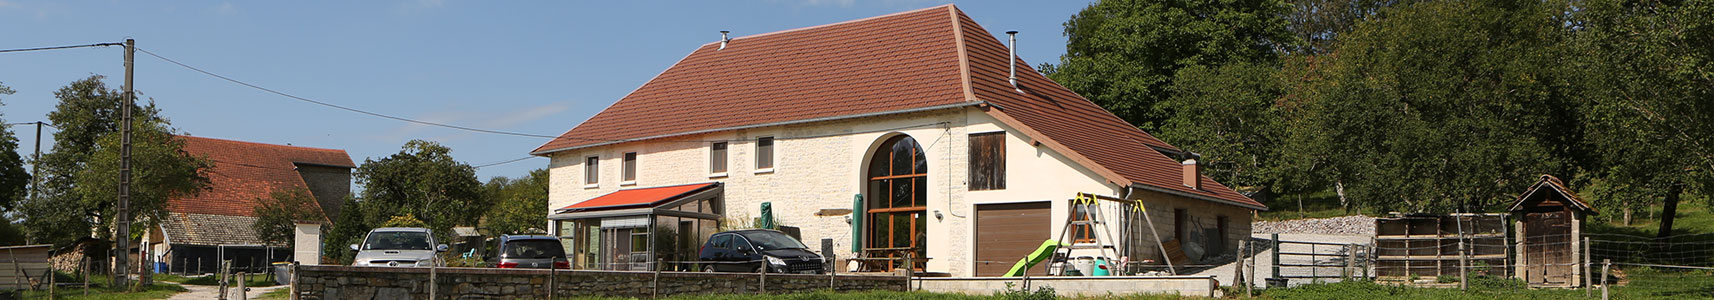 Gîte du Barquet près de Besançon